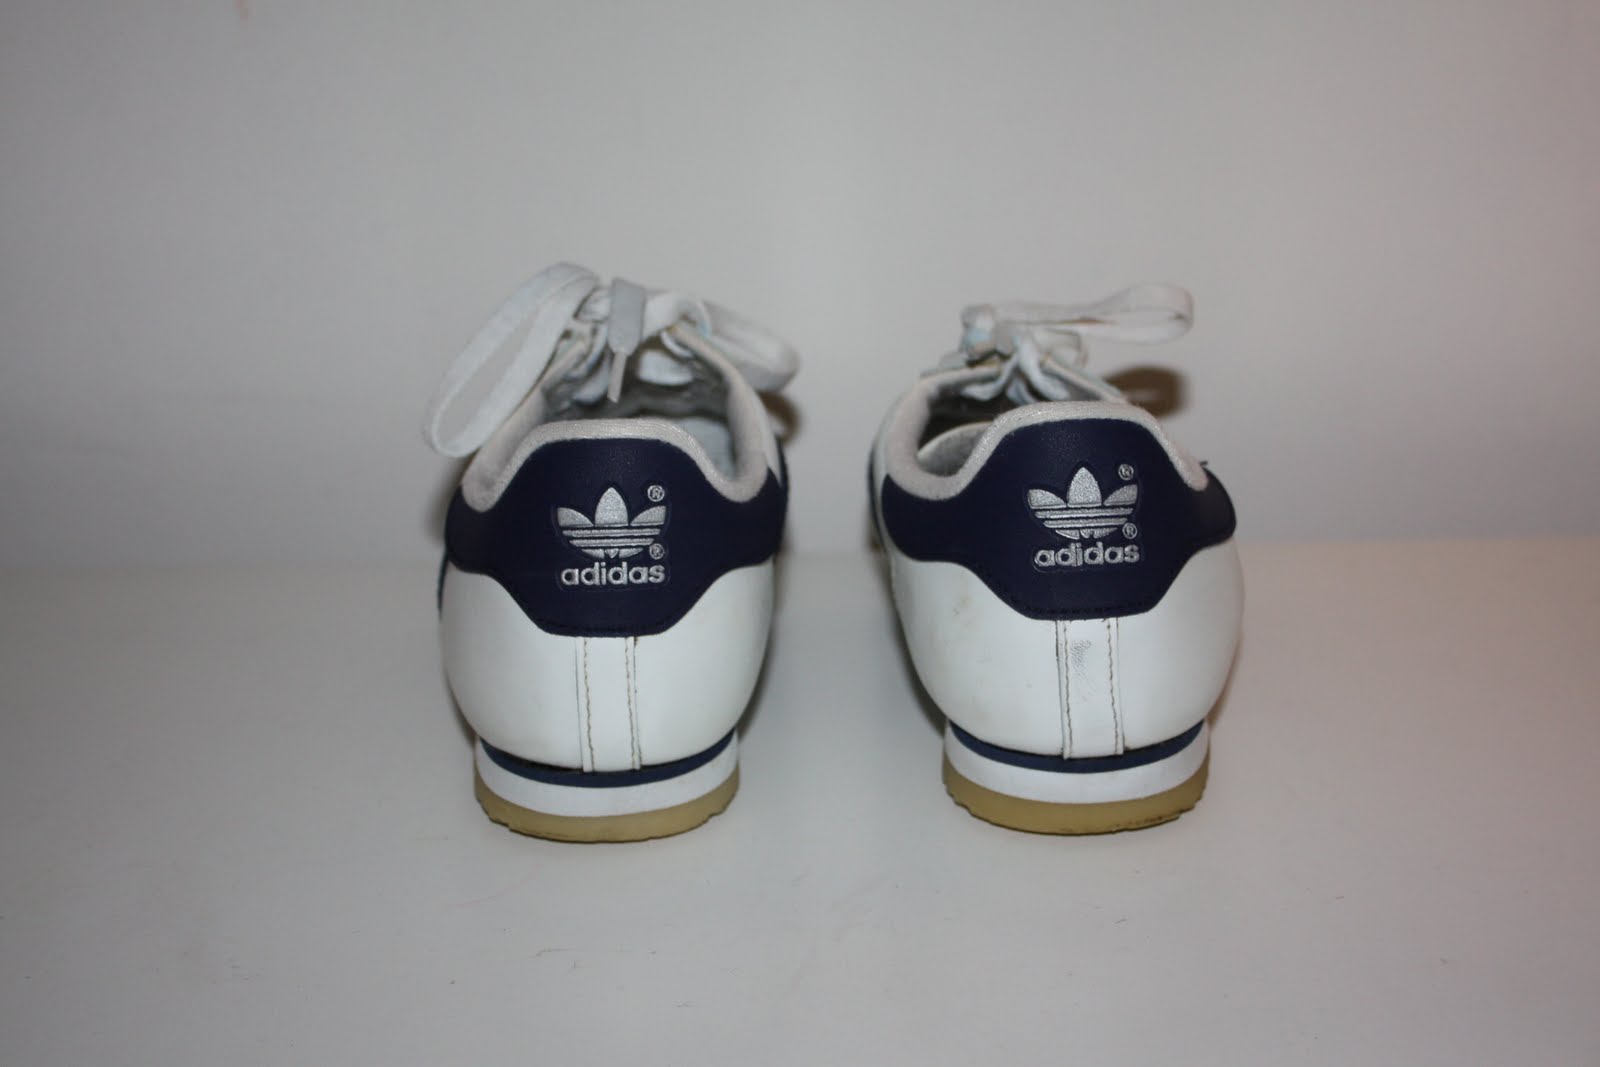 my vintage sneakers: Adidas ROM (1998)